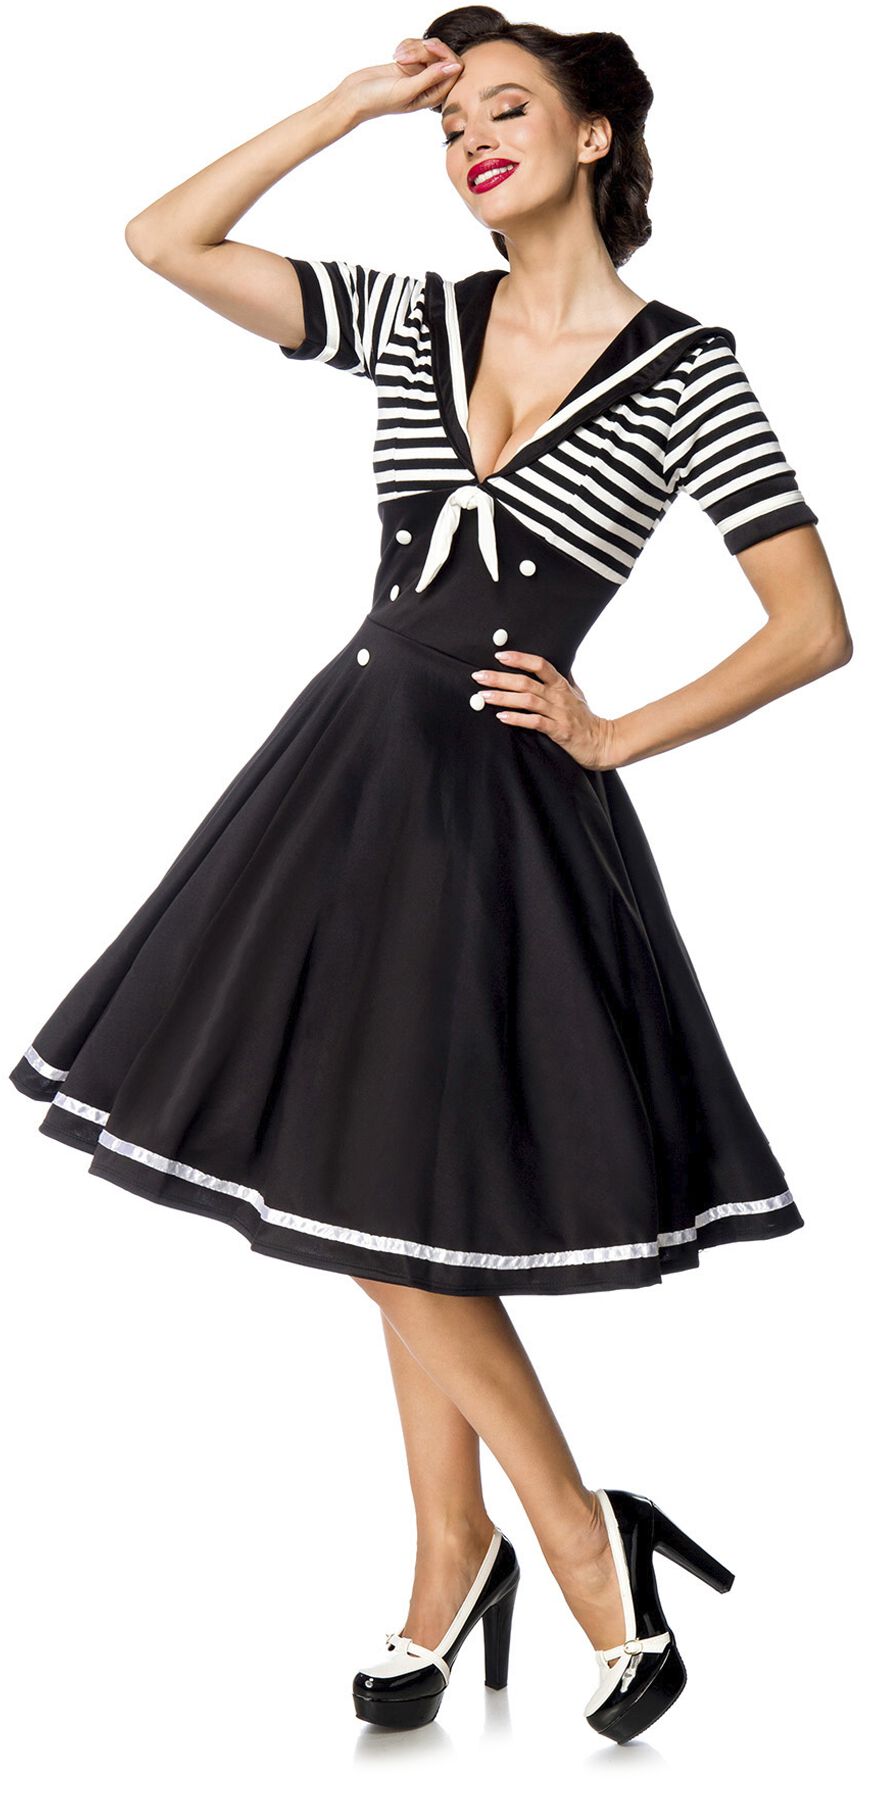 Belsira - Rockabilly Kleid knielang - Swing-Kleid im Marinelook - S bis 4XL - für Damen - Größe 4XL - schwarz/weiß